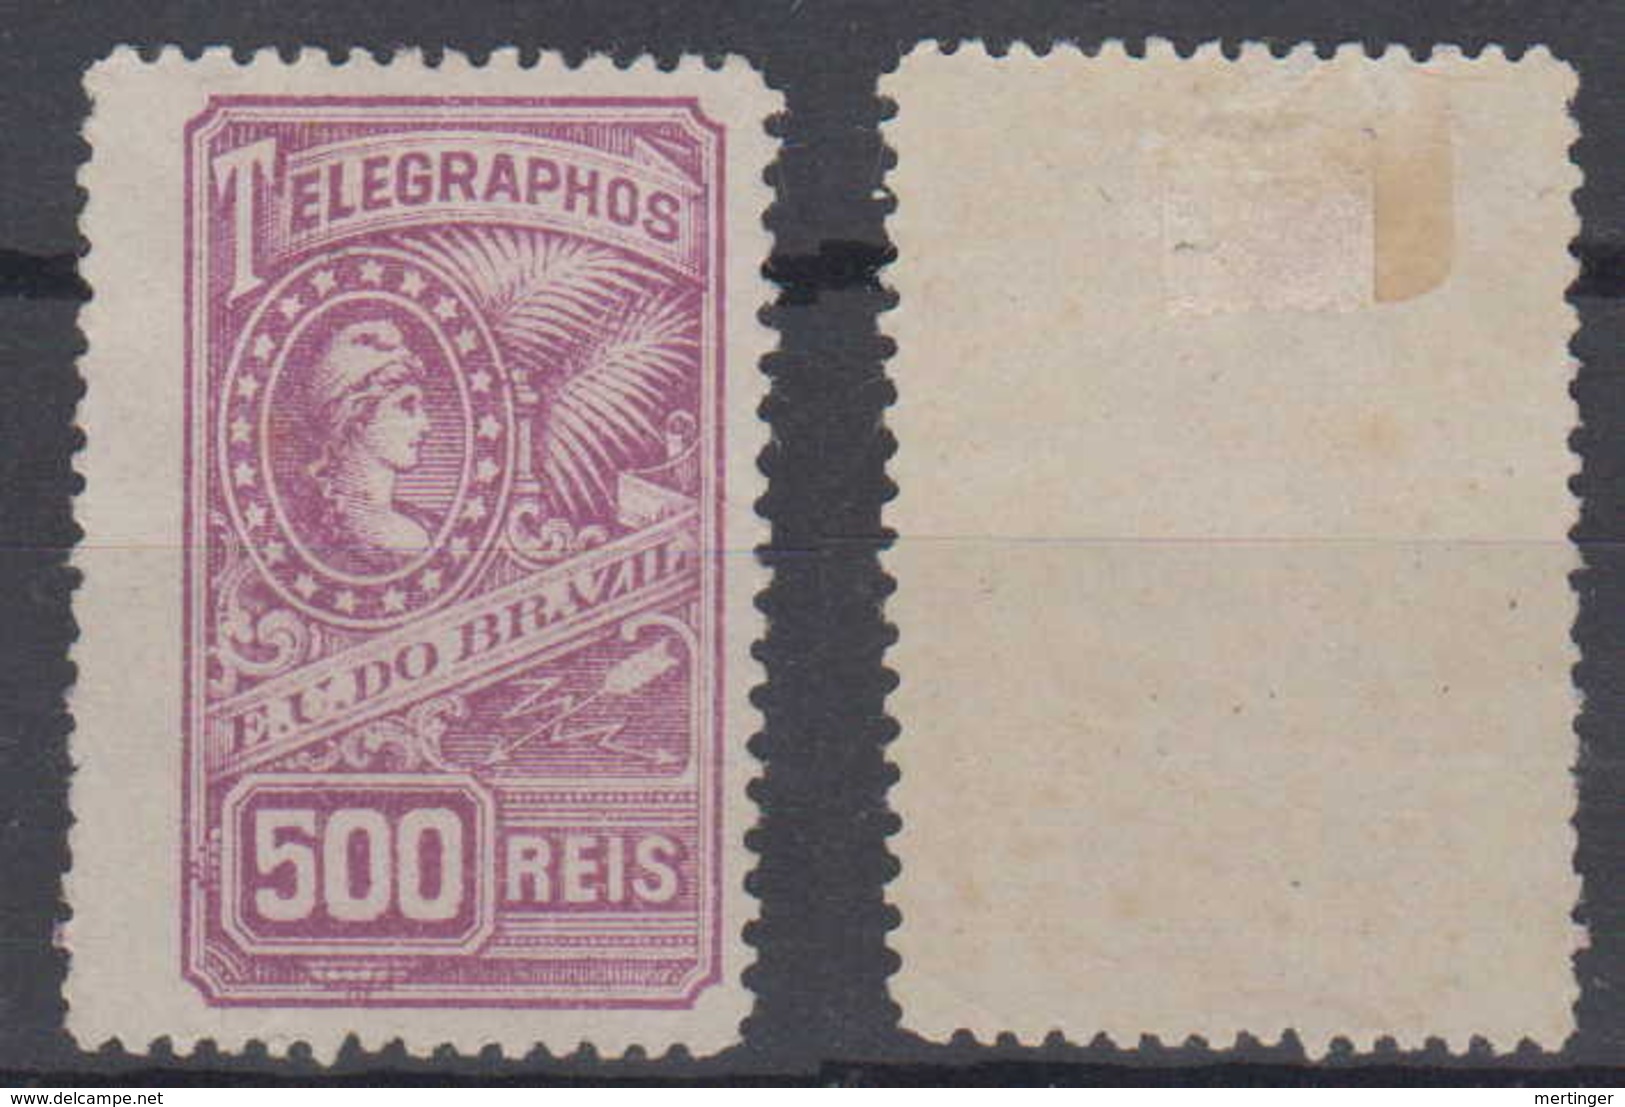 Brazil Brasil Telegrafo Telegraph 1899 500R * Mint - Telegrafo